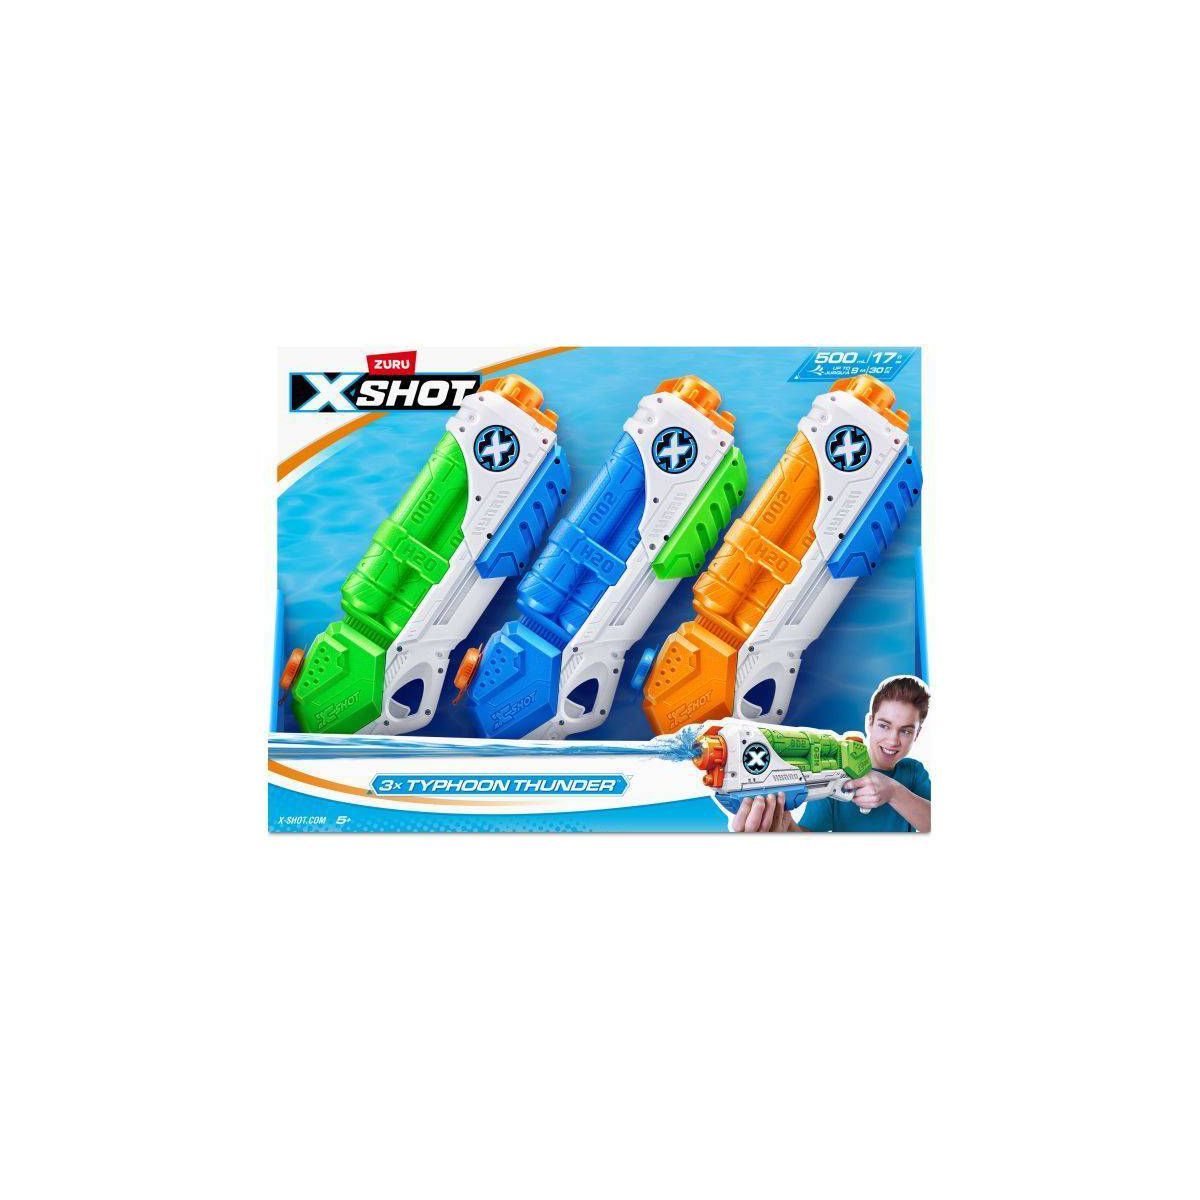 X-Shot Water Typhoon Thunder Toy Blaster - 3pk | Target